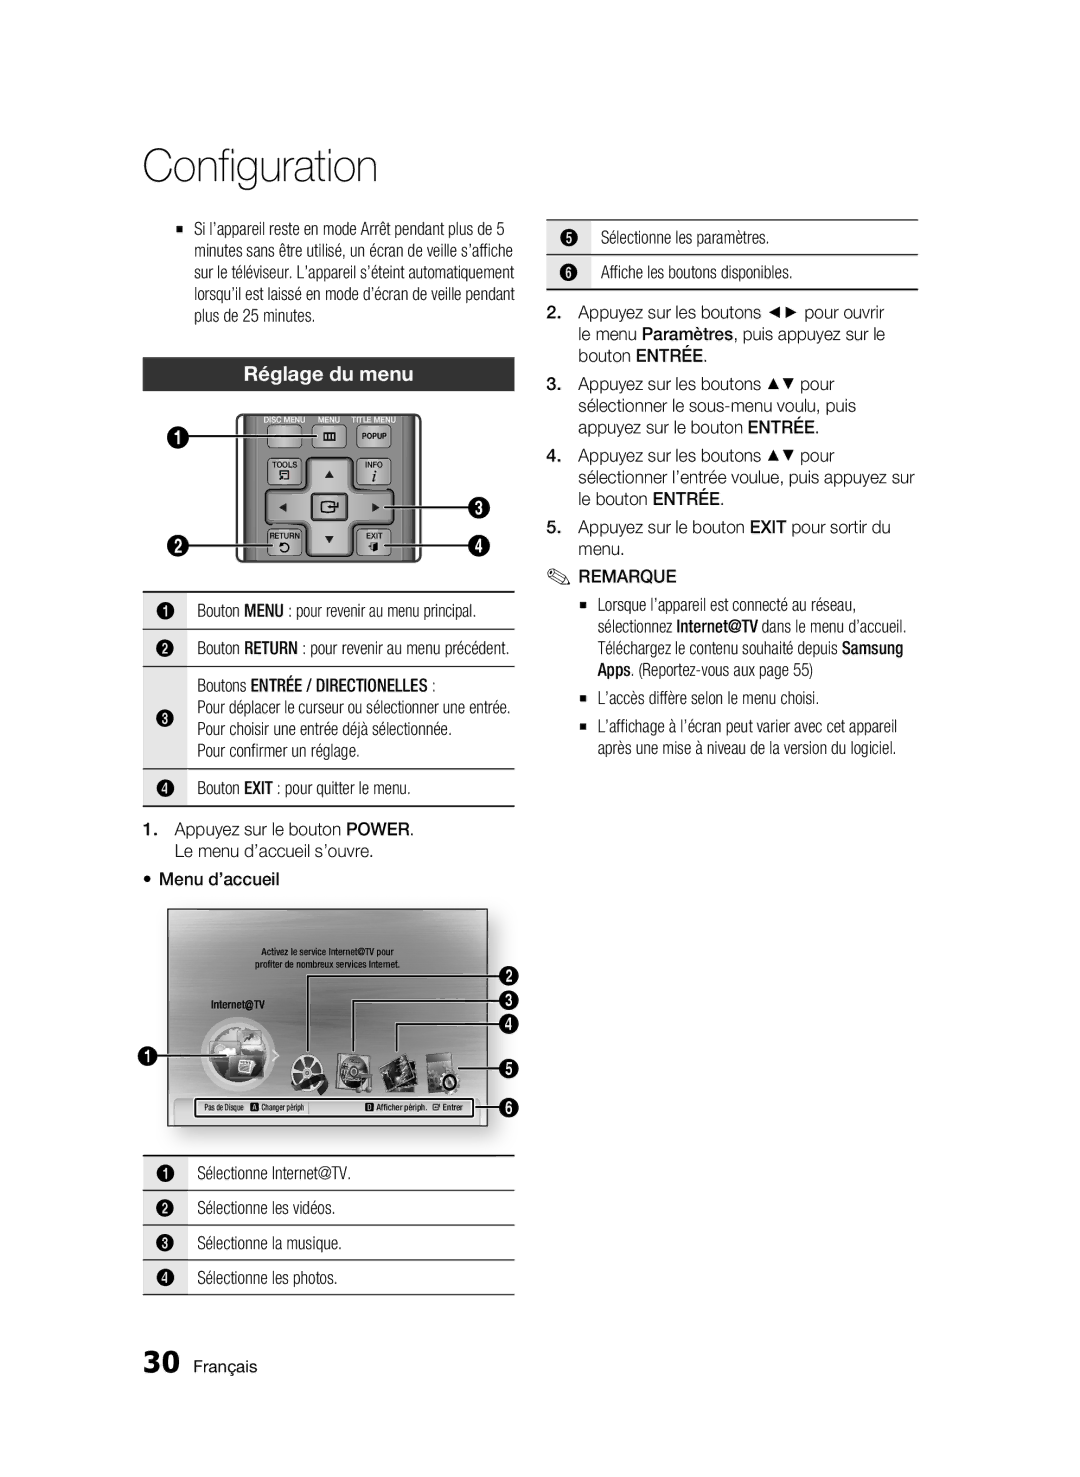 Samsung BD-C7500/XEF, BD-C7500/EDC Réglage du menu, Bouton Exit pour quitter le menu, ’accès diffère selon le menu choisi 